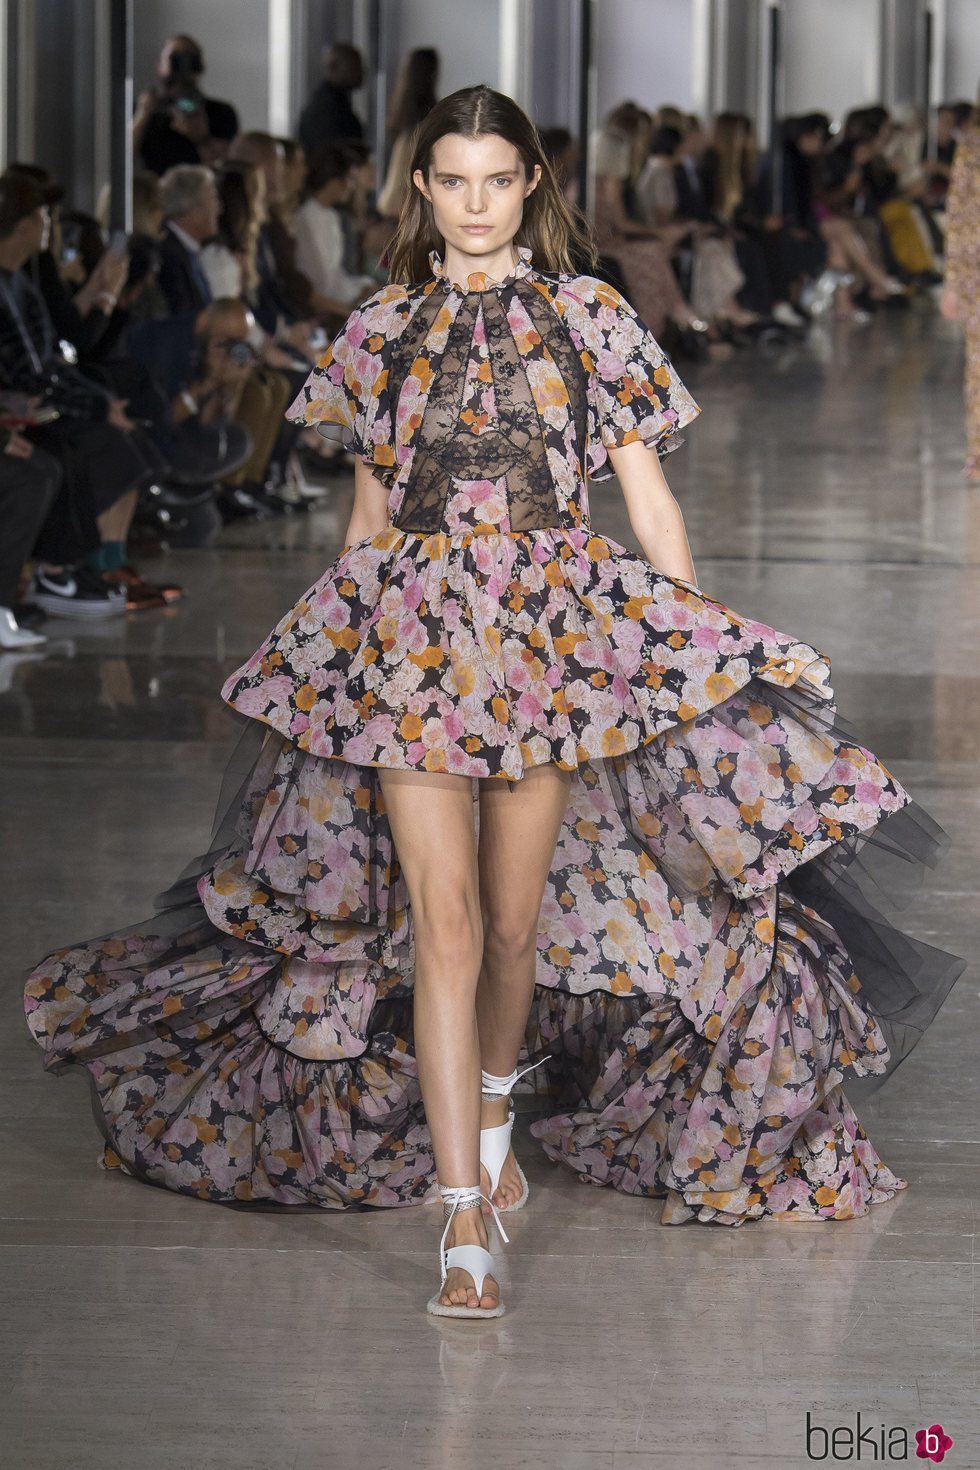 Vestido asimétrico de Giambattista Valli primavera/verano 2019 en la Paris Fashion Week